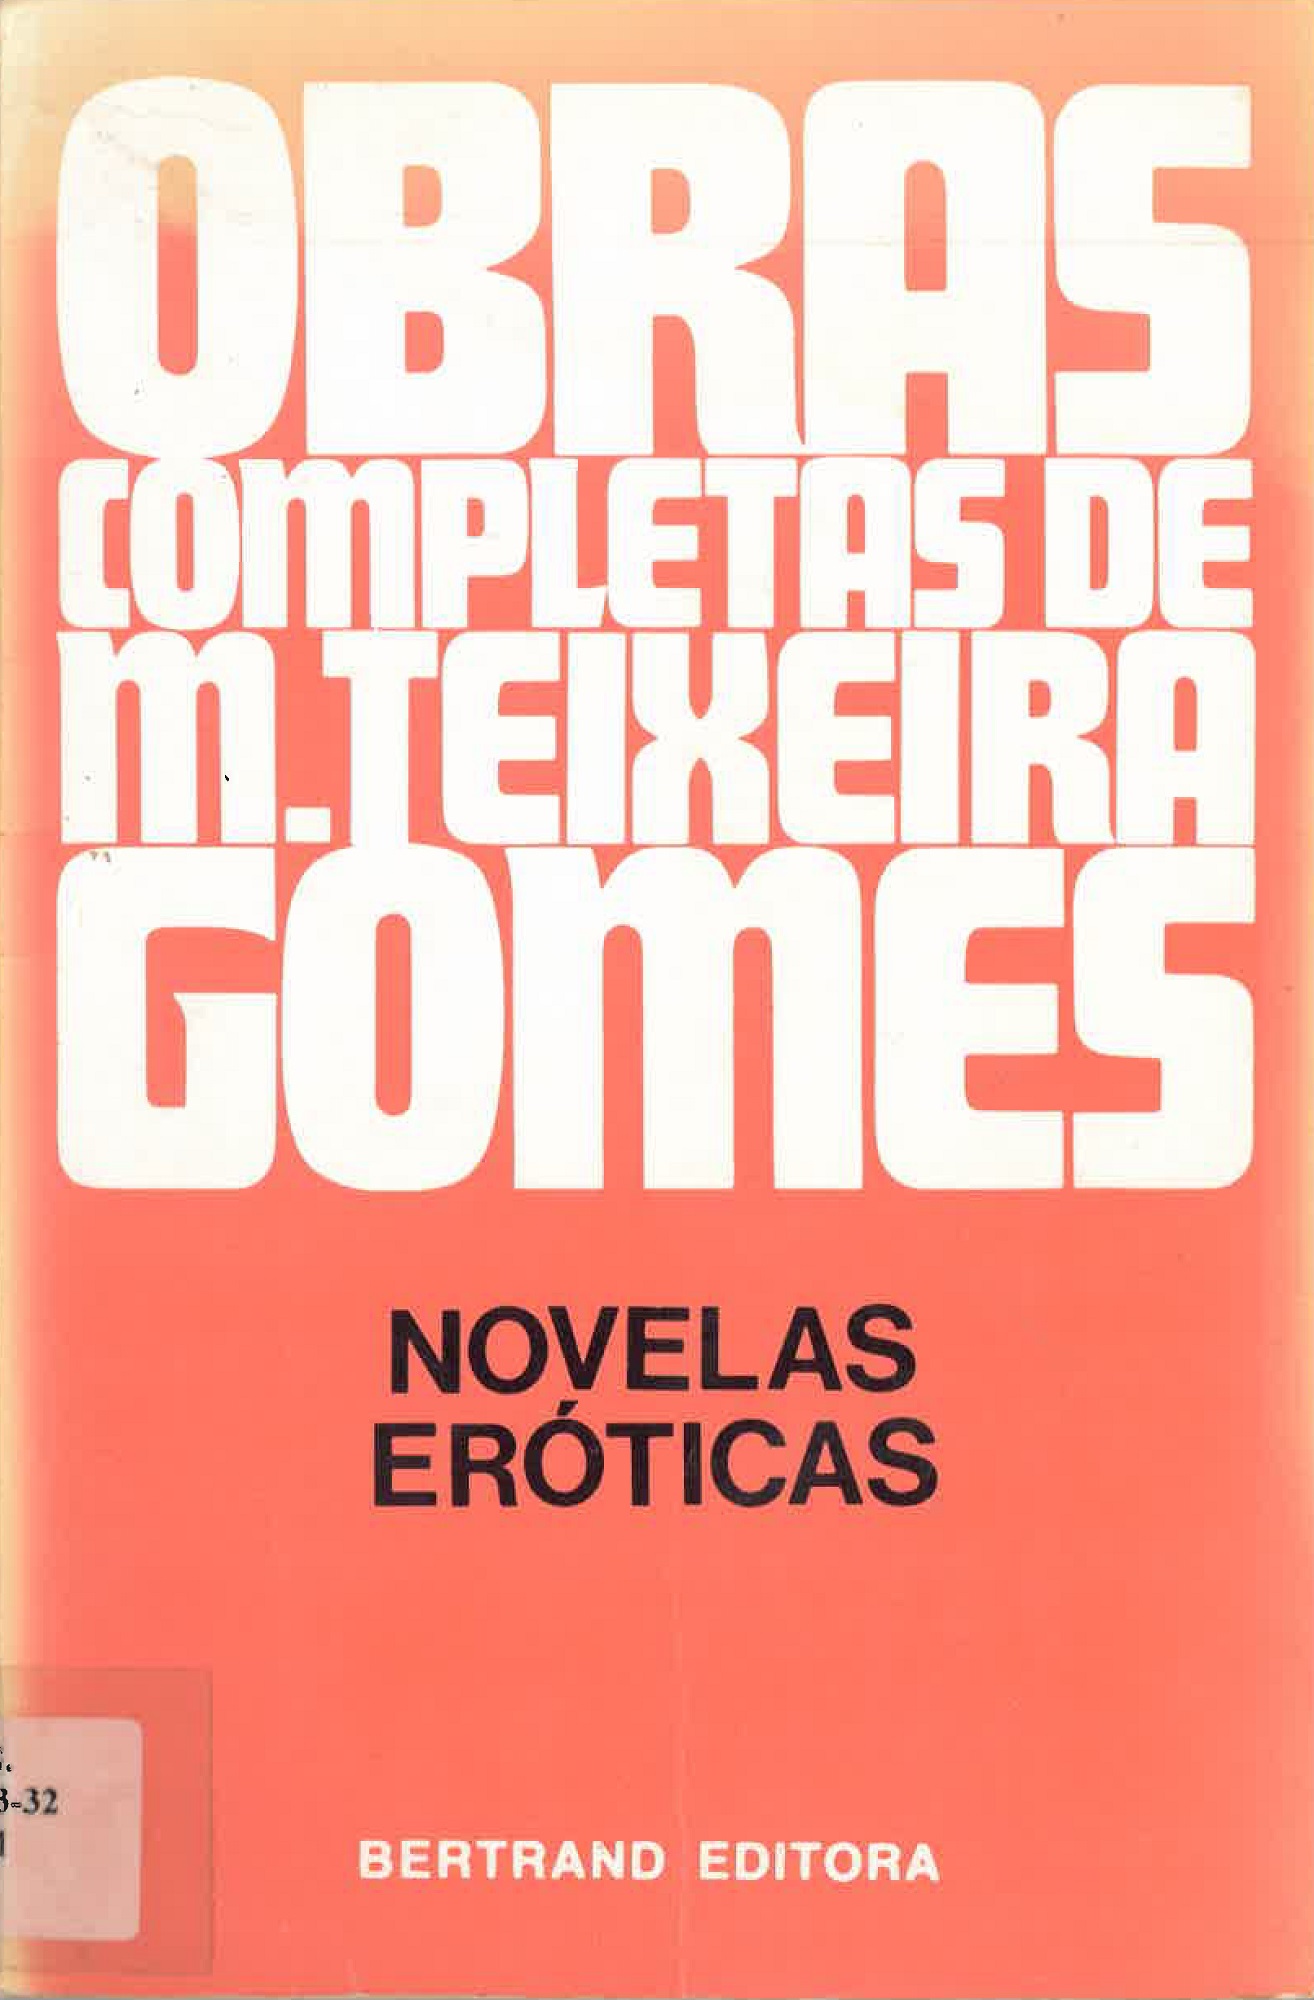 Gomes, Manuel Teixeira - Novelas Eroticas - capa.jpg